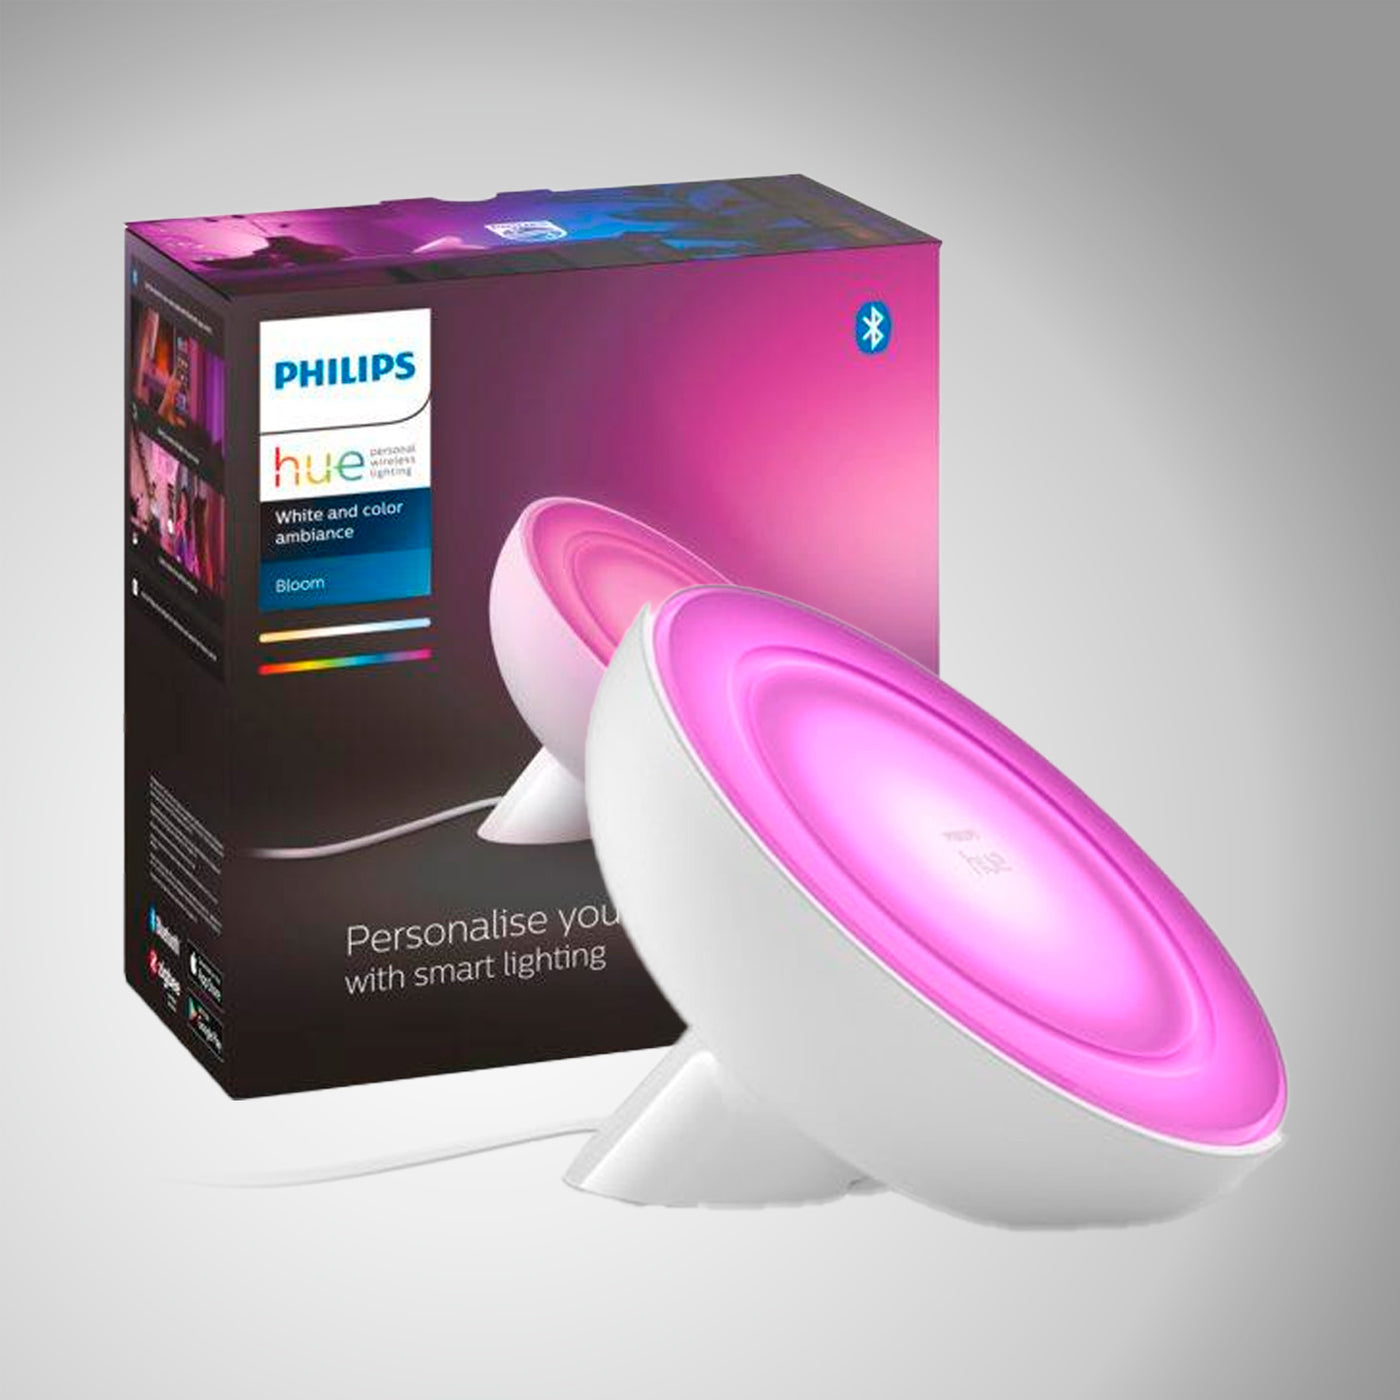 Bloom Lampara De Mesa Inteligente Led Philips Hue  Color